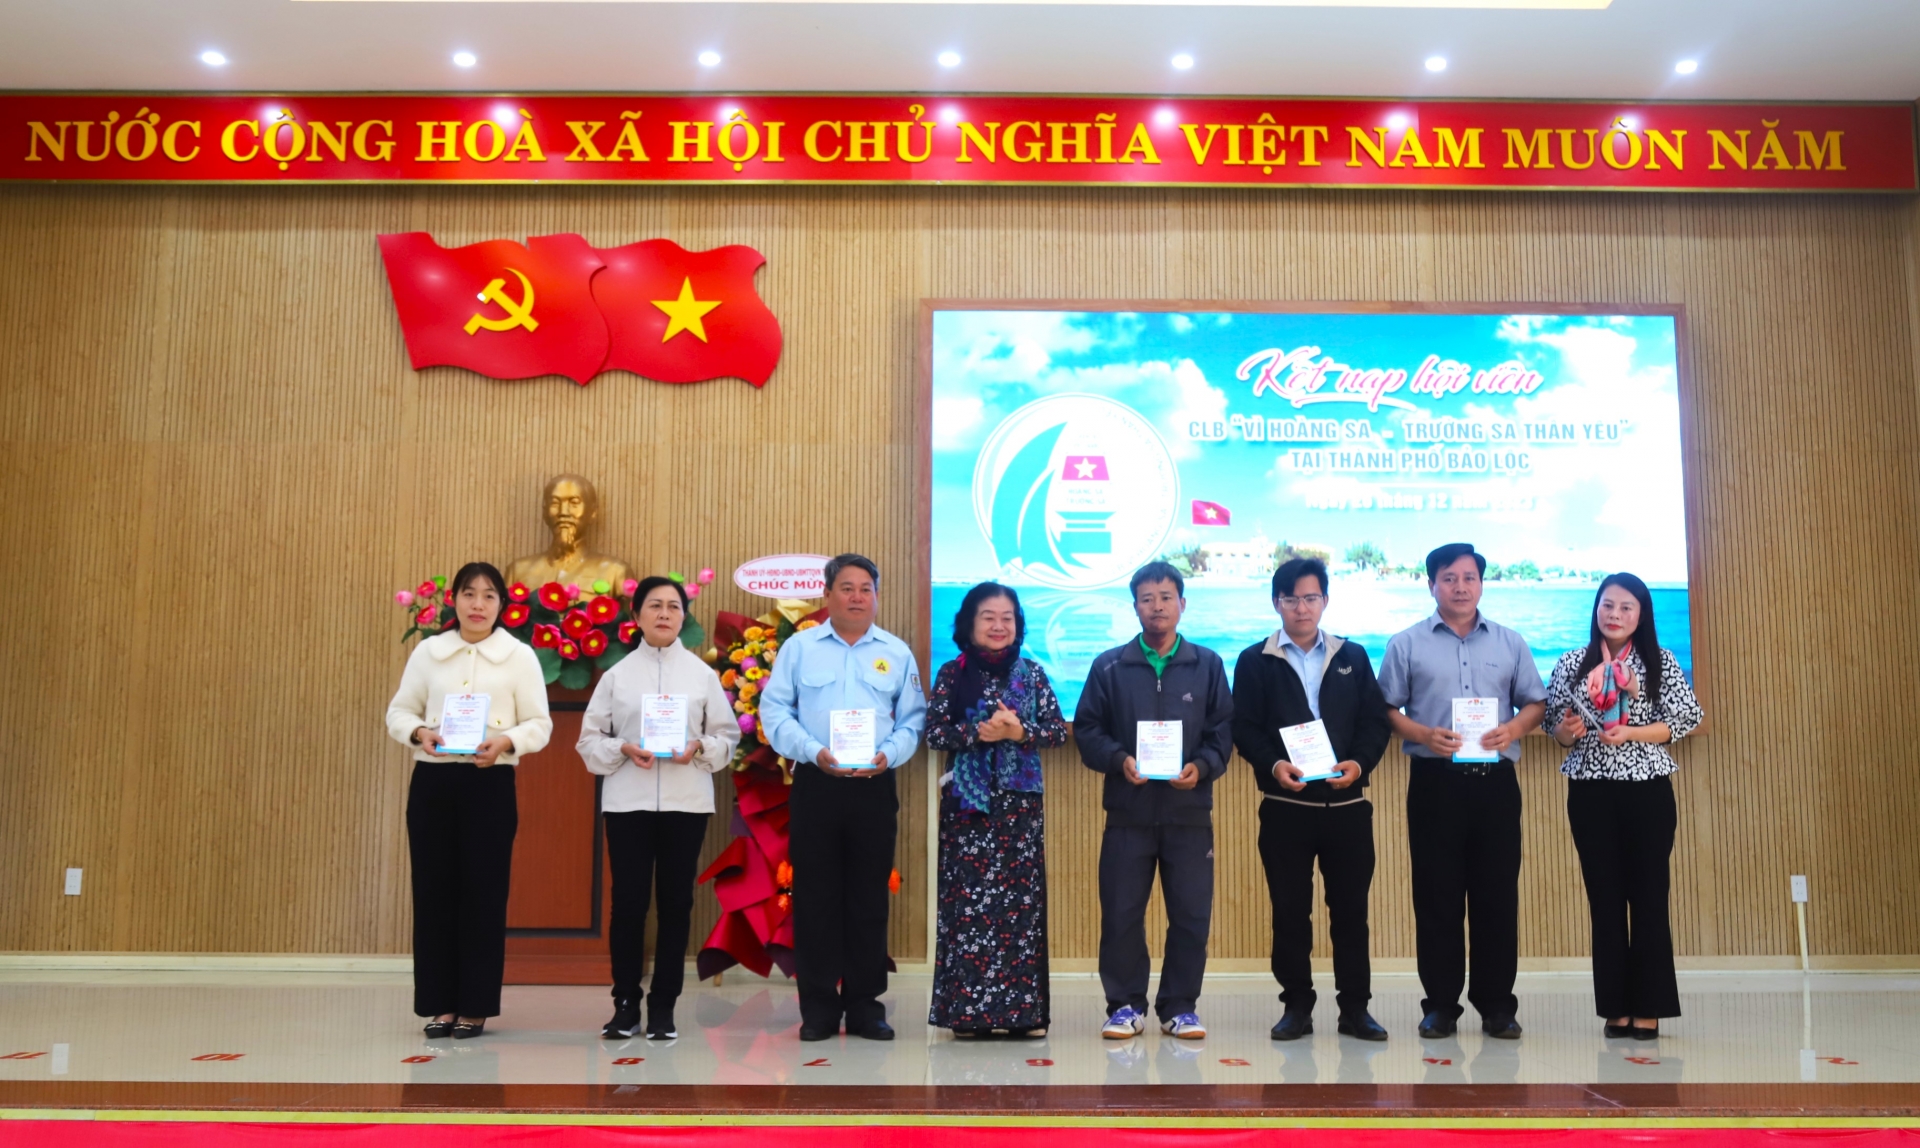 Đồng chí Trương Mỹ Hoa trao thể hội viên CLB Vì Hoàng Sa - Trường Sa thân yêu cho các hội viên Lâm Đồng mới kết nạp